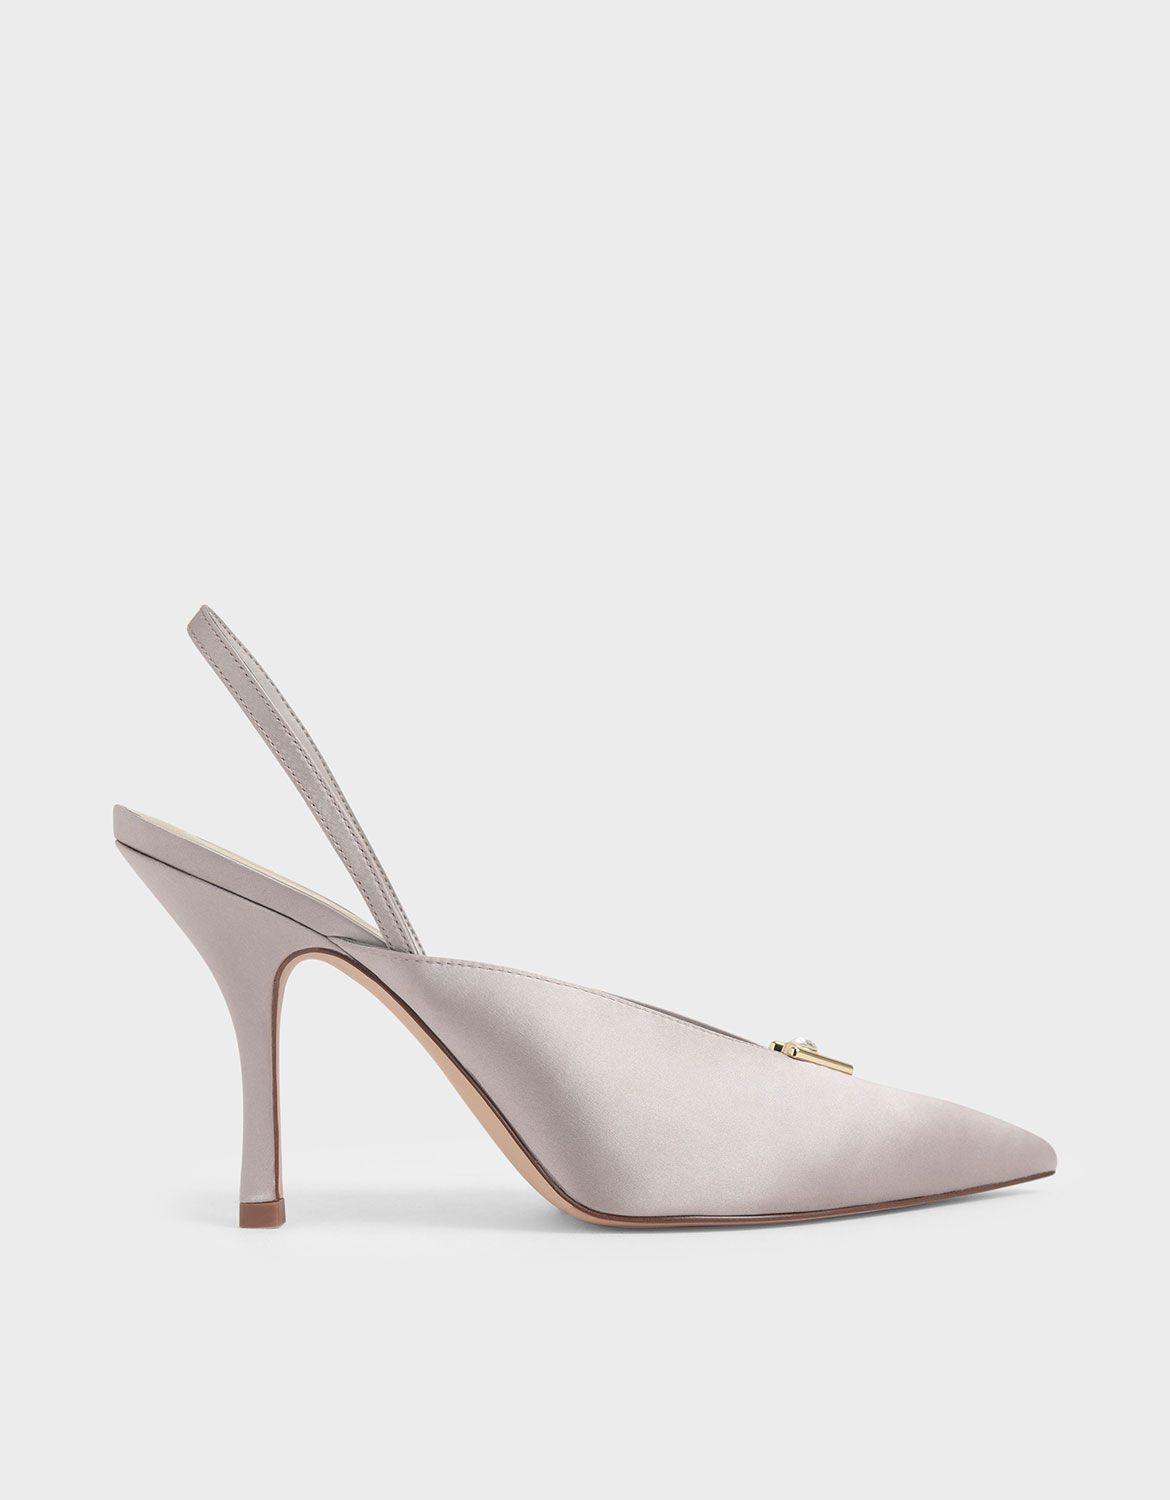 satin embellished heels